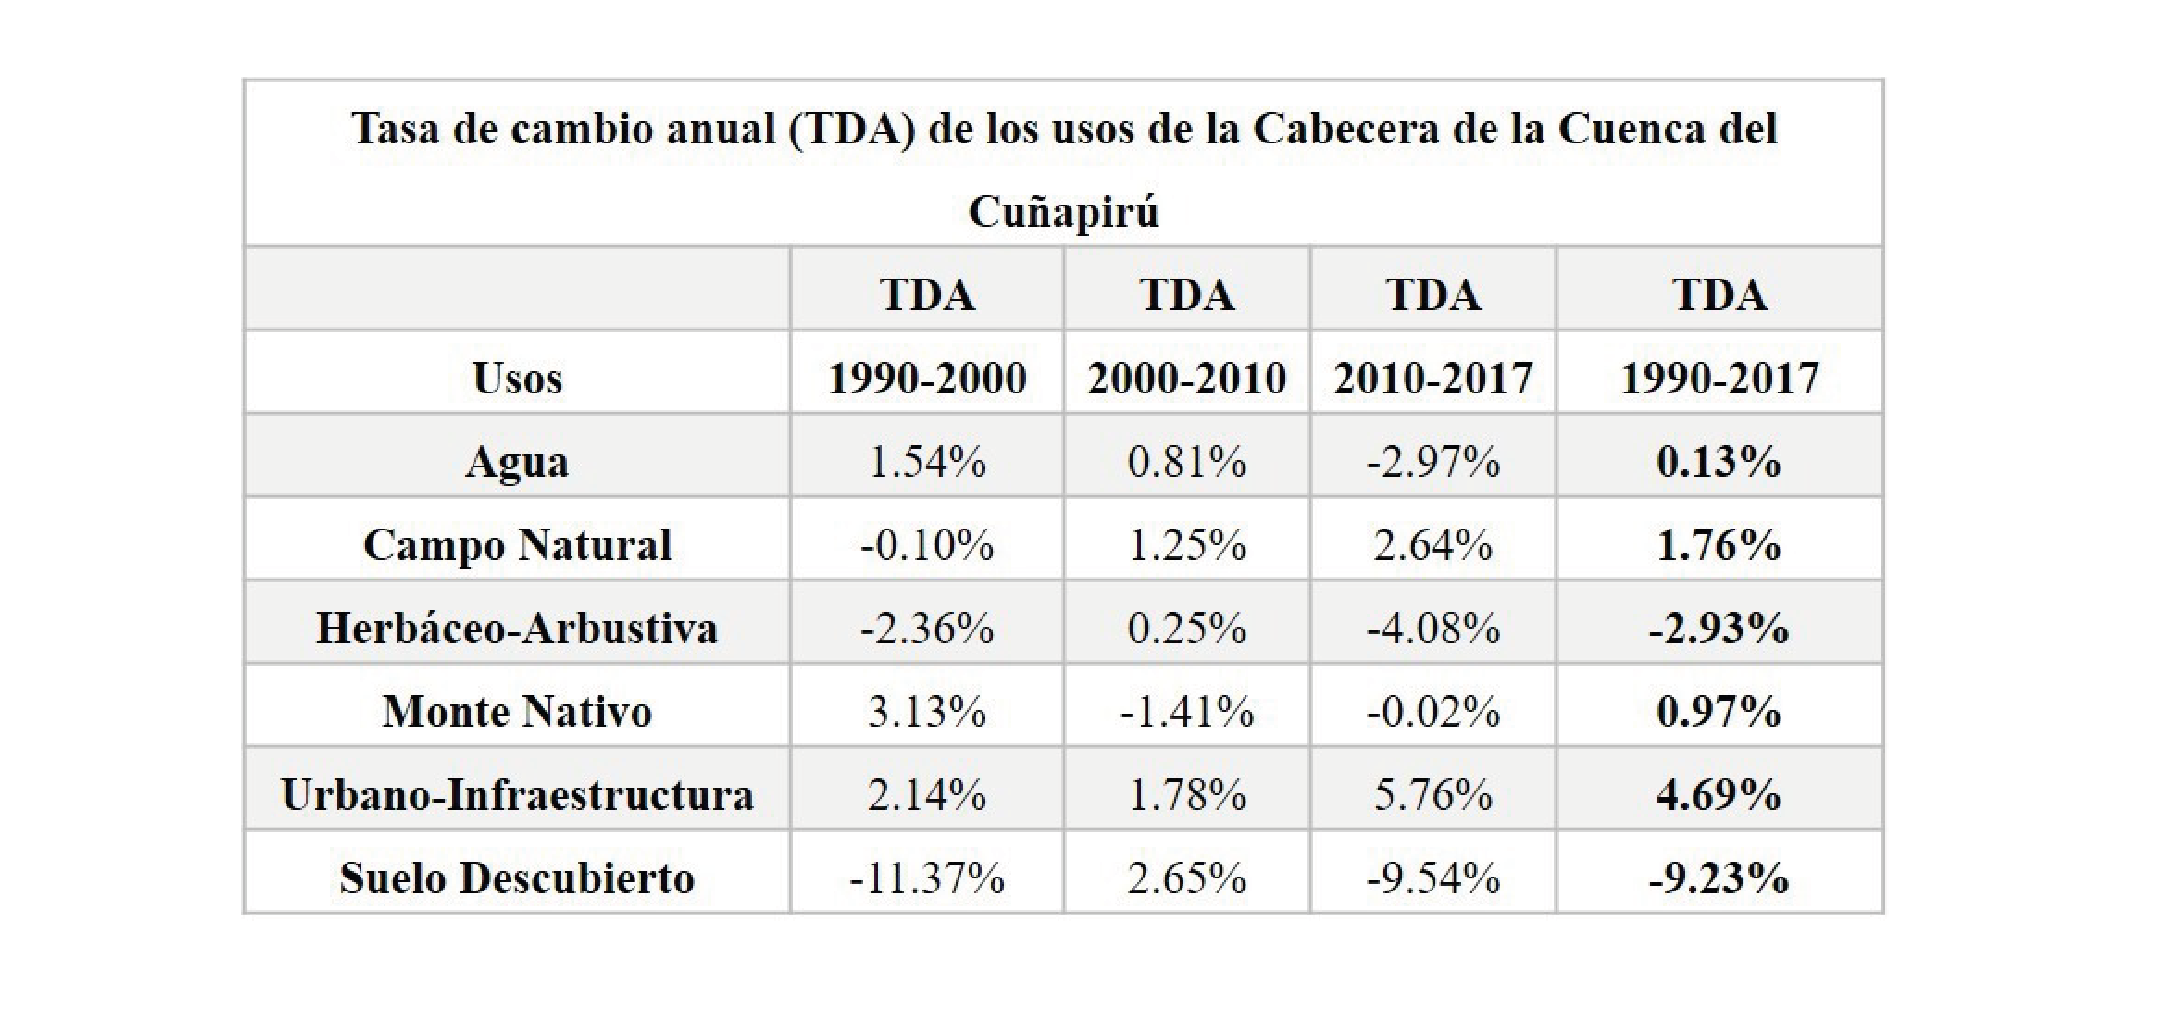 Superficie de TDA en % según categorías de usos del suelo para los años
1990, 2000, 2010 y 2017.